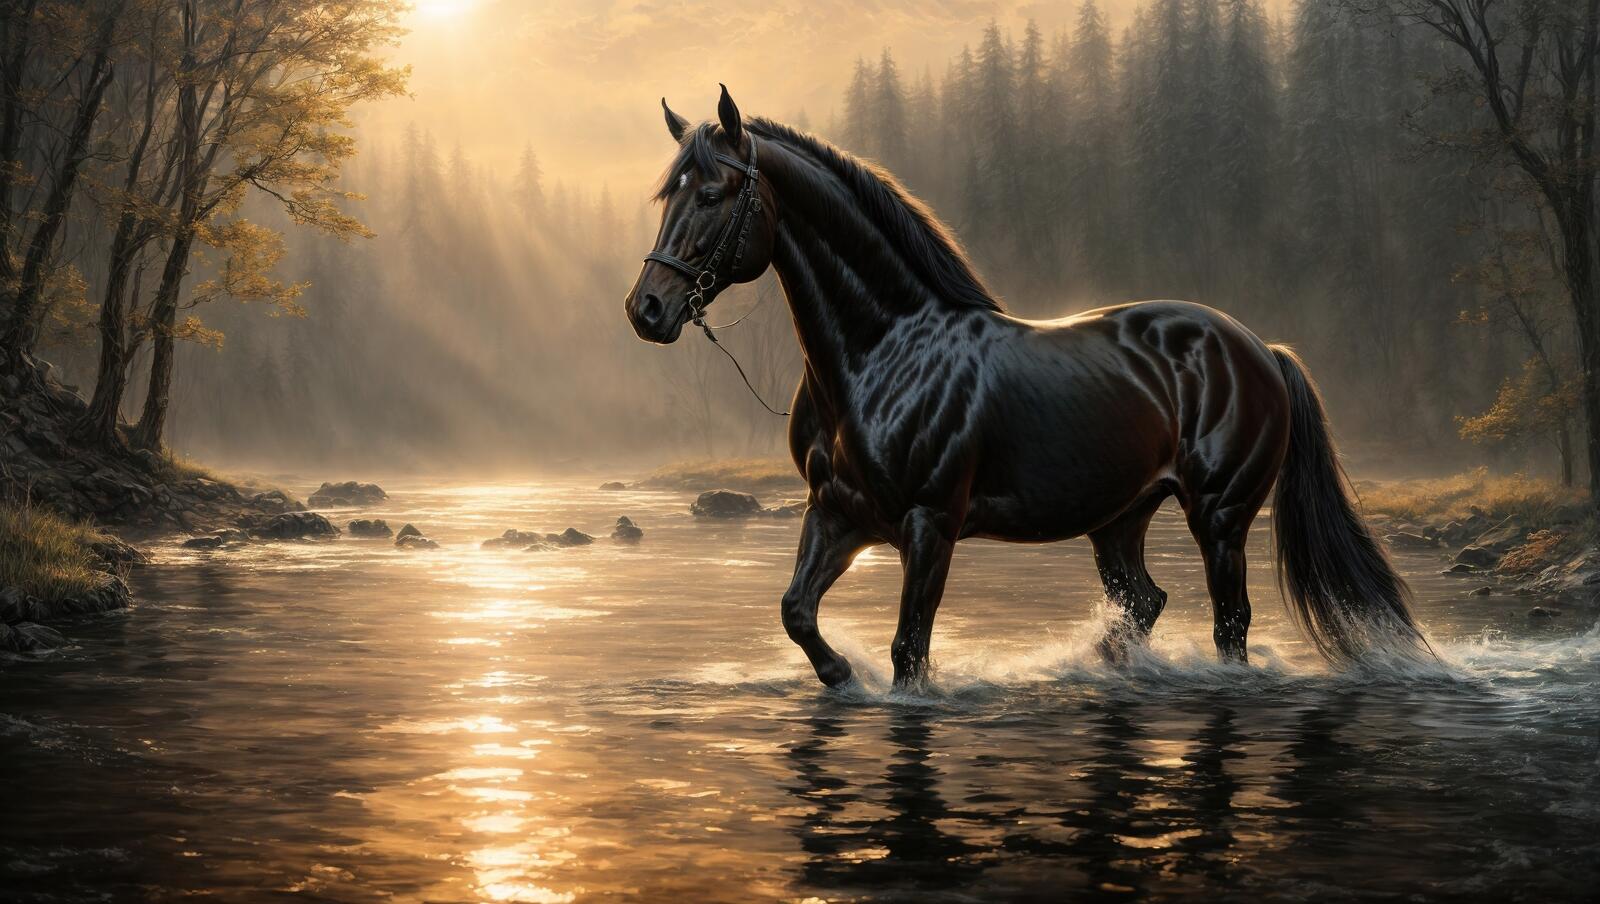 Бесплатное фото Картина с изображением черной лошади, бредущей по ручью в лесу